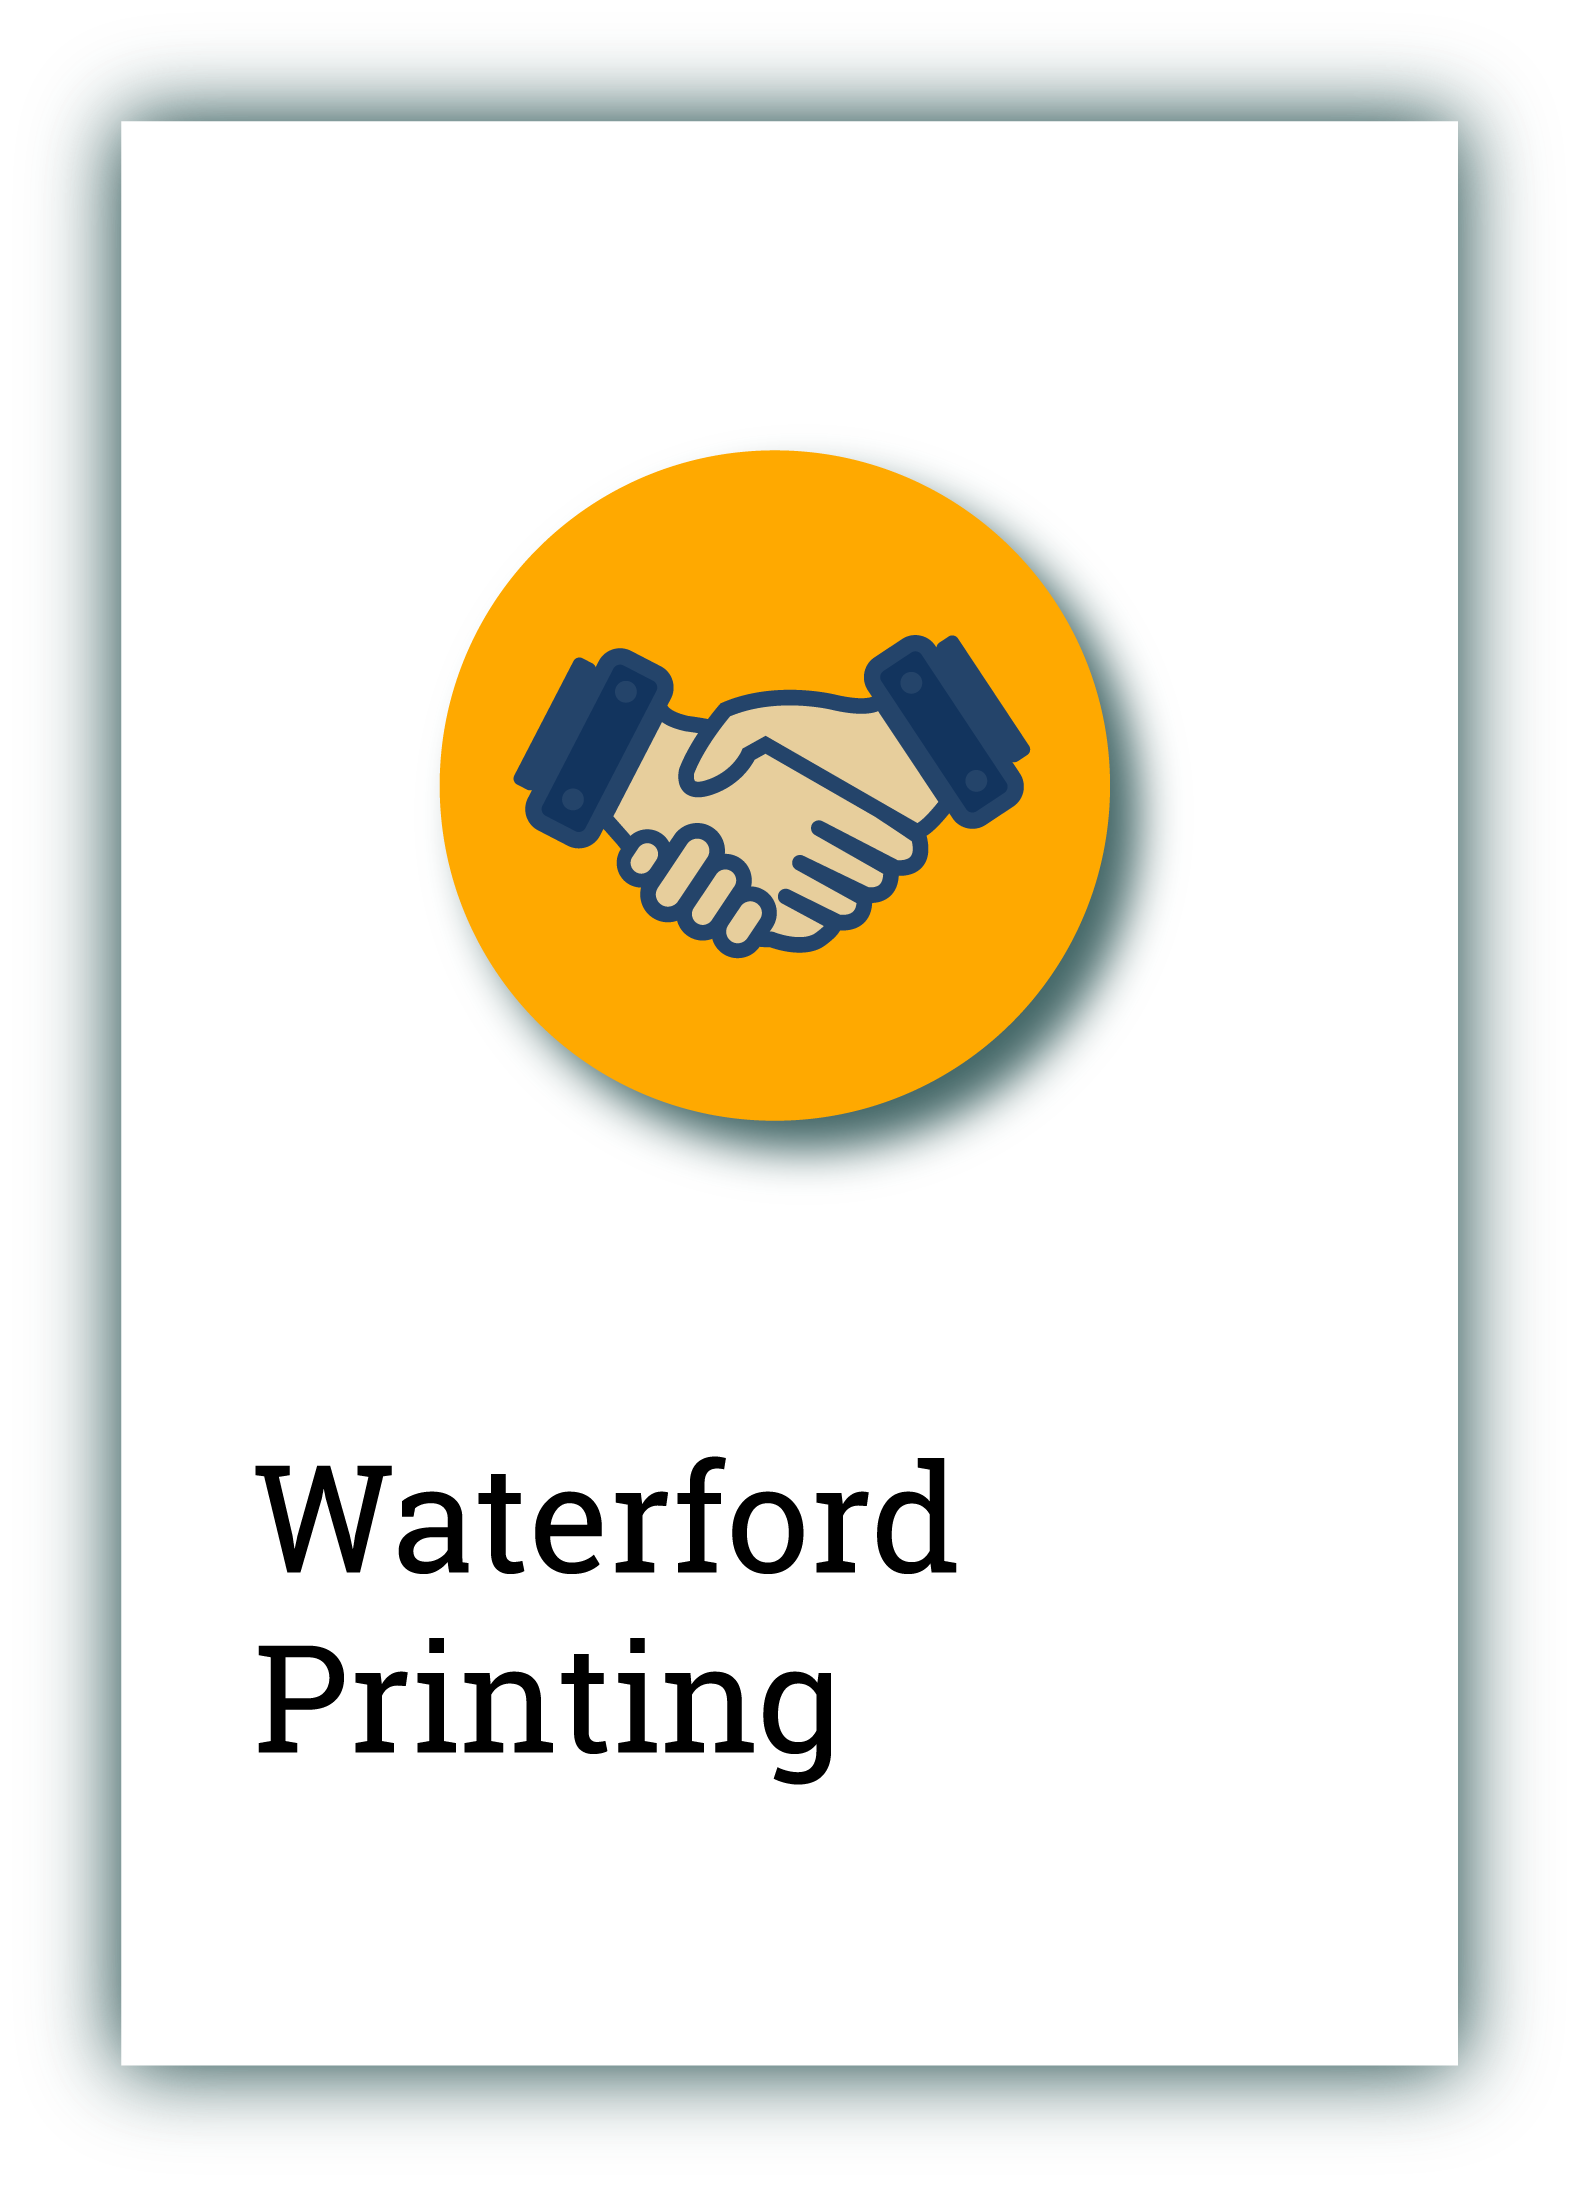 Waterford Printing